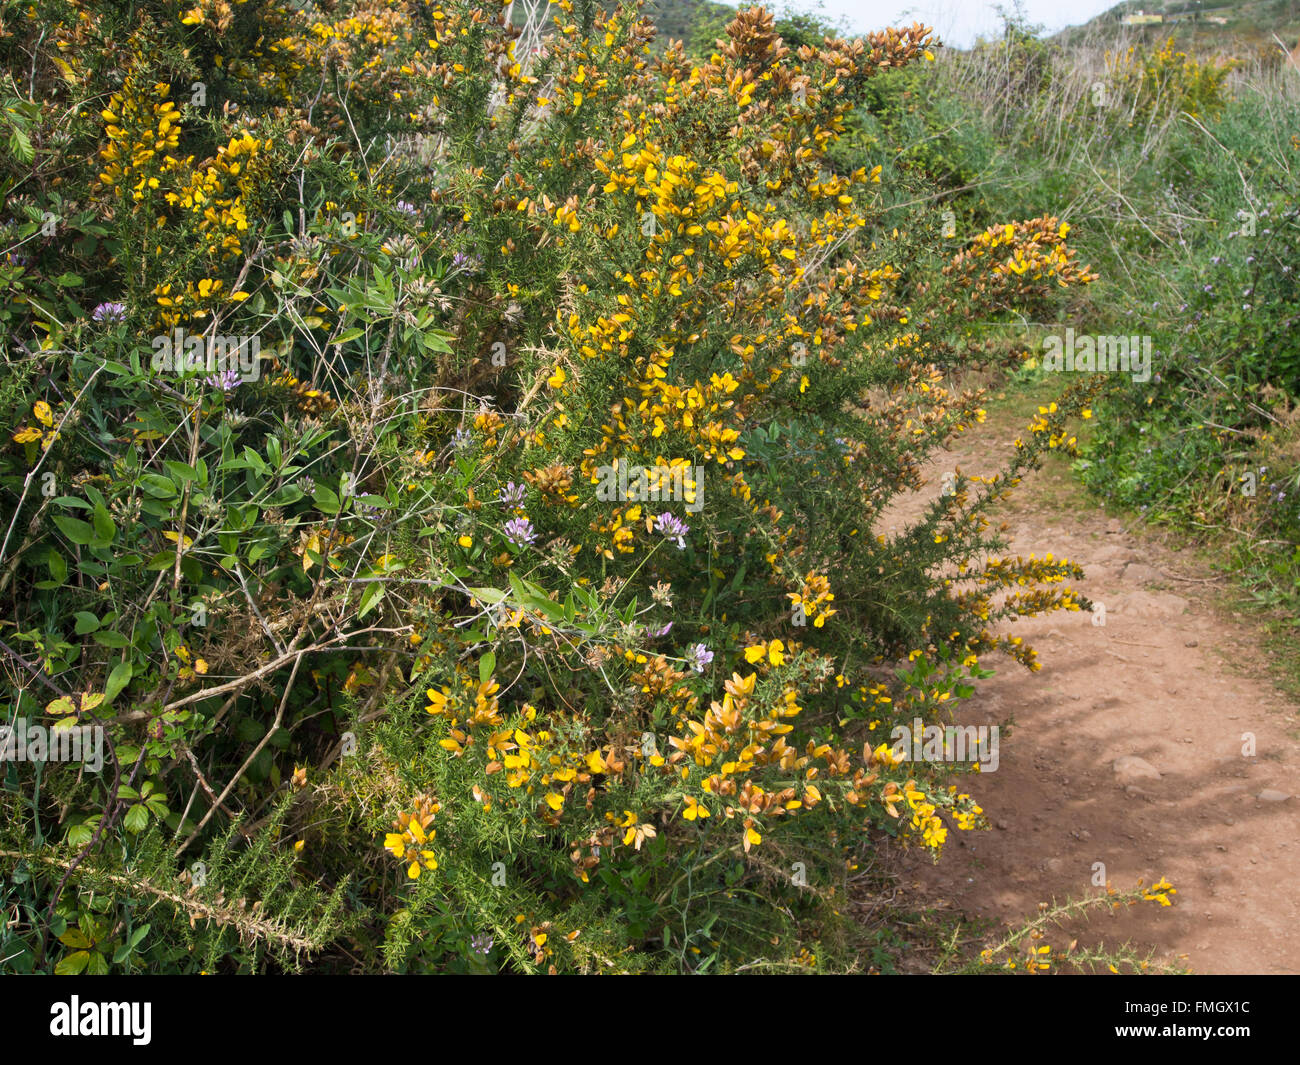 Sendero de retamas, Arabian guisante y exuberante vegetación alrededor del Erjos 'charcas' Tenerife Islas Canarias Foto de stock